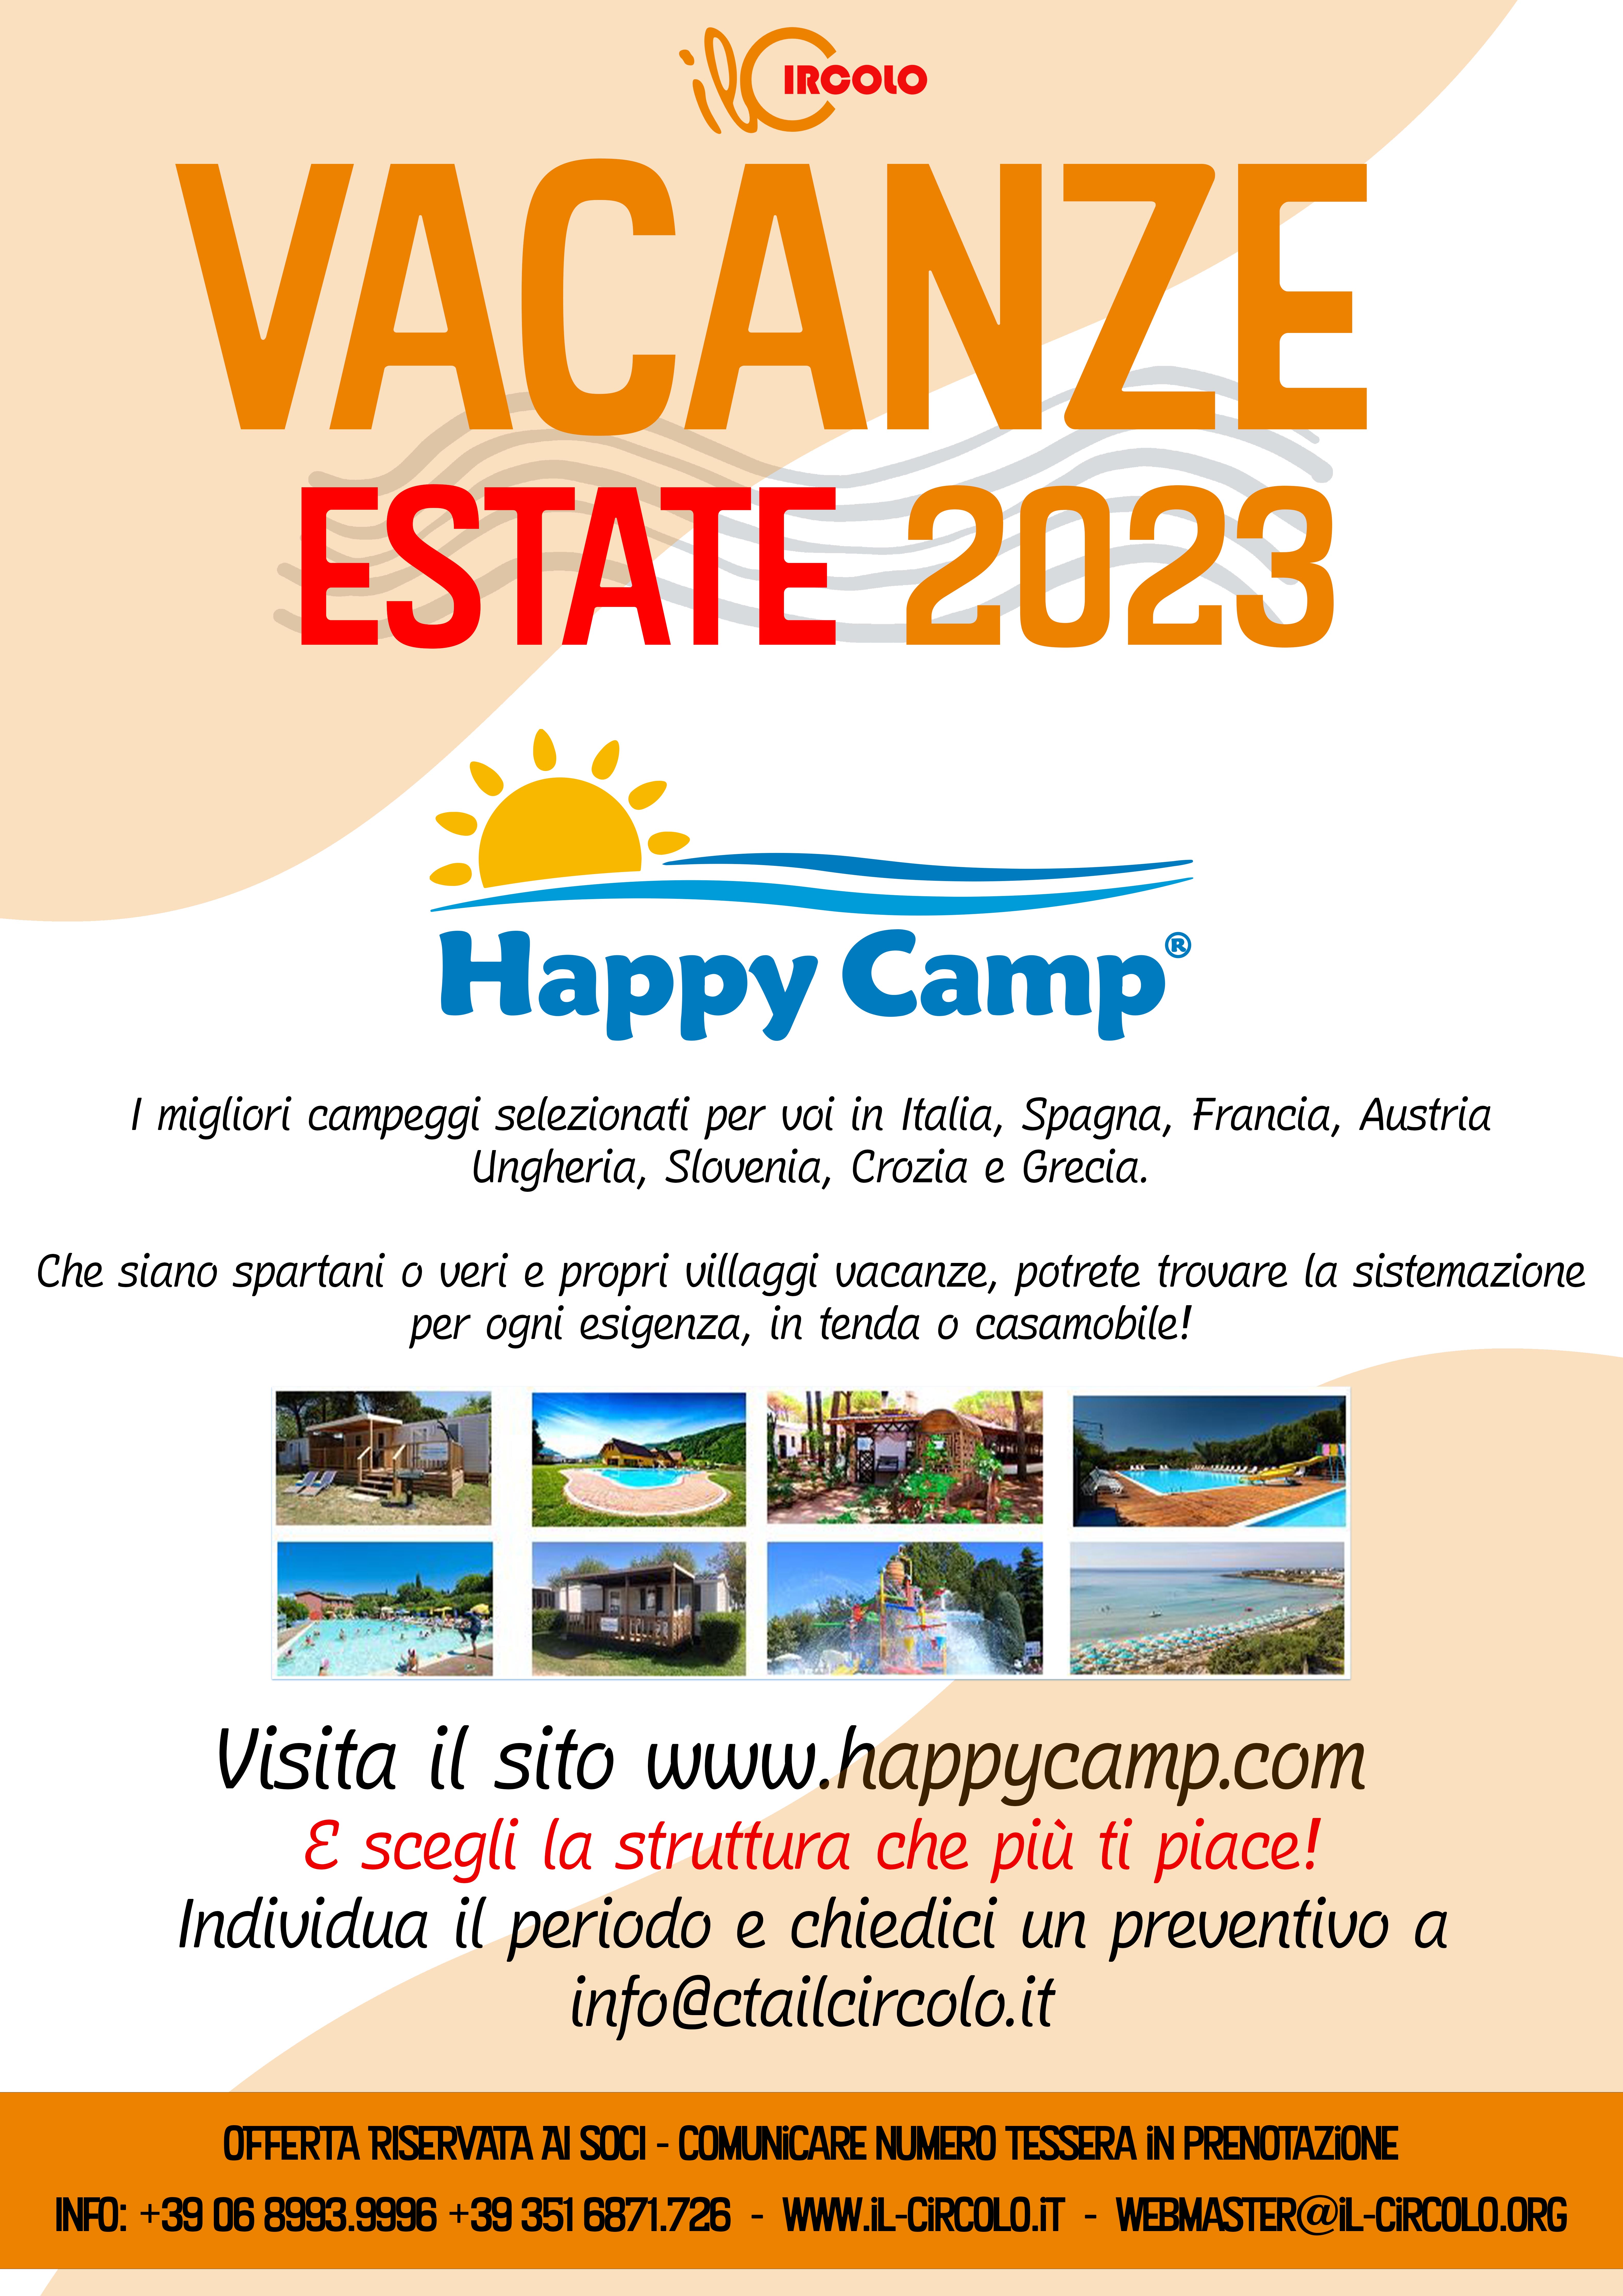 HAPPY CAMP ESTATE 2023 - I migliori campeggi selezionati per voi in Italia, Spagna, Francia, Austria Ungheria, Slovenia, Crozia e Grecia